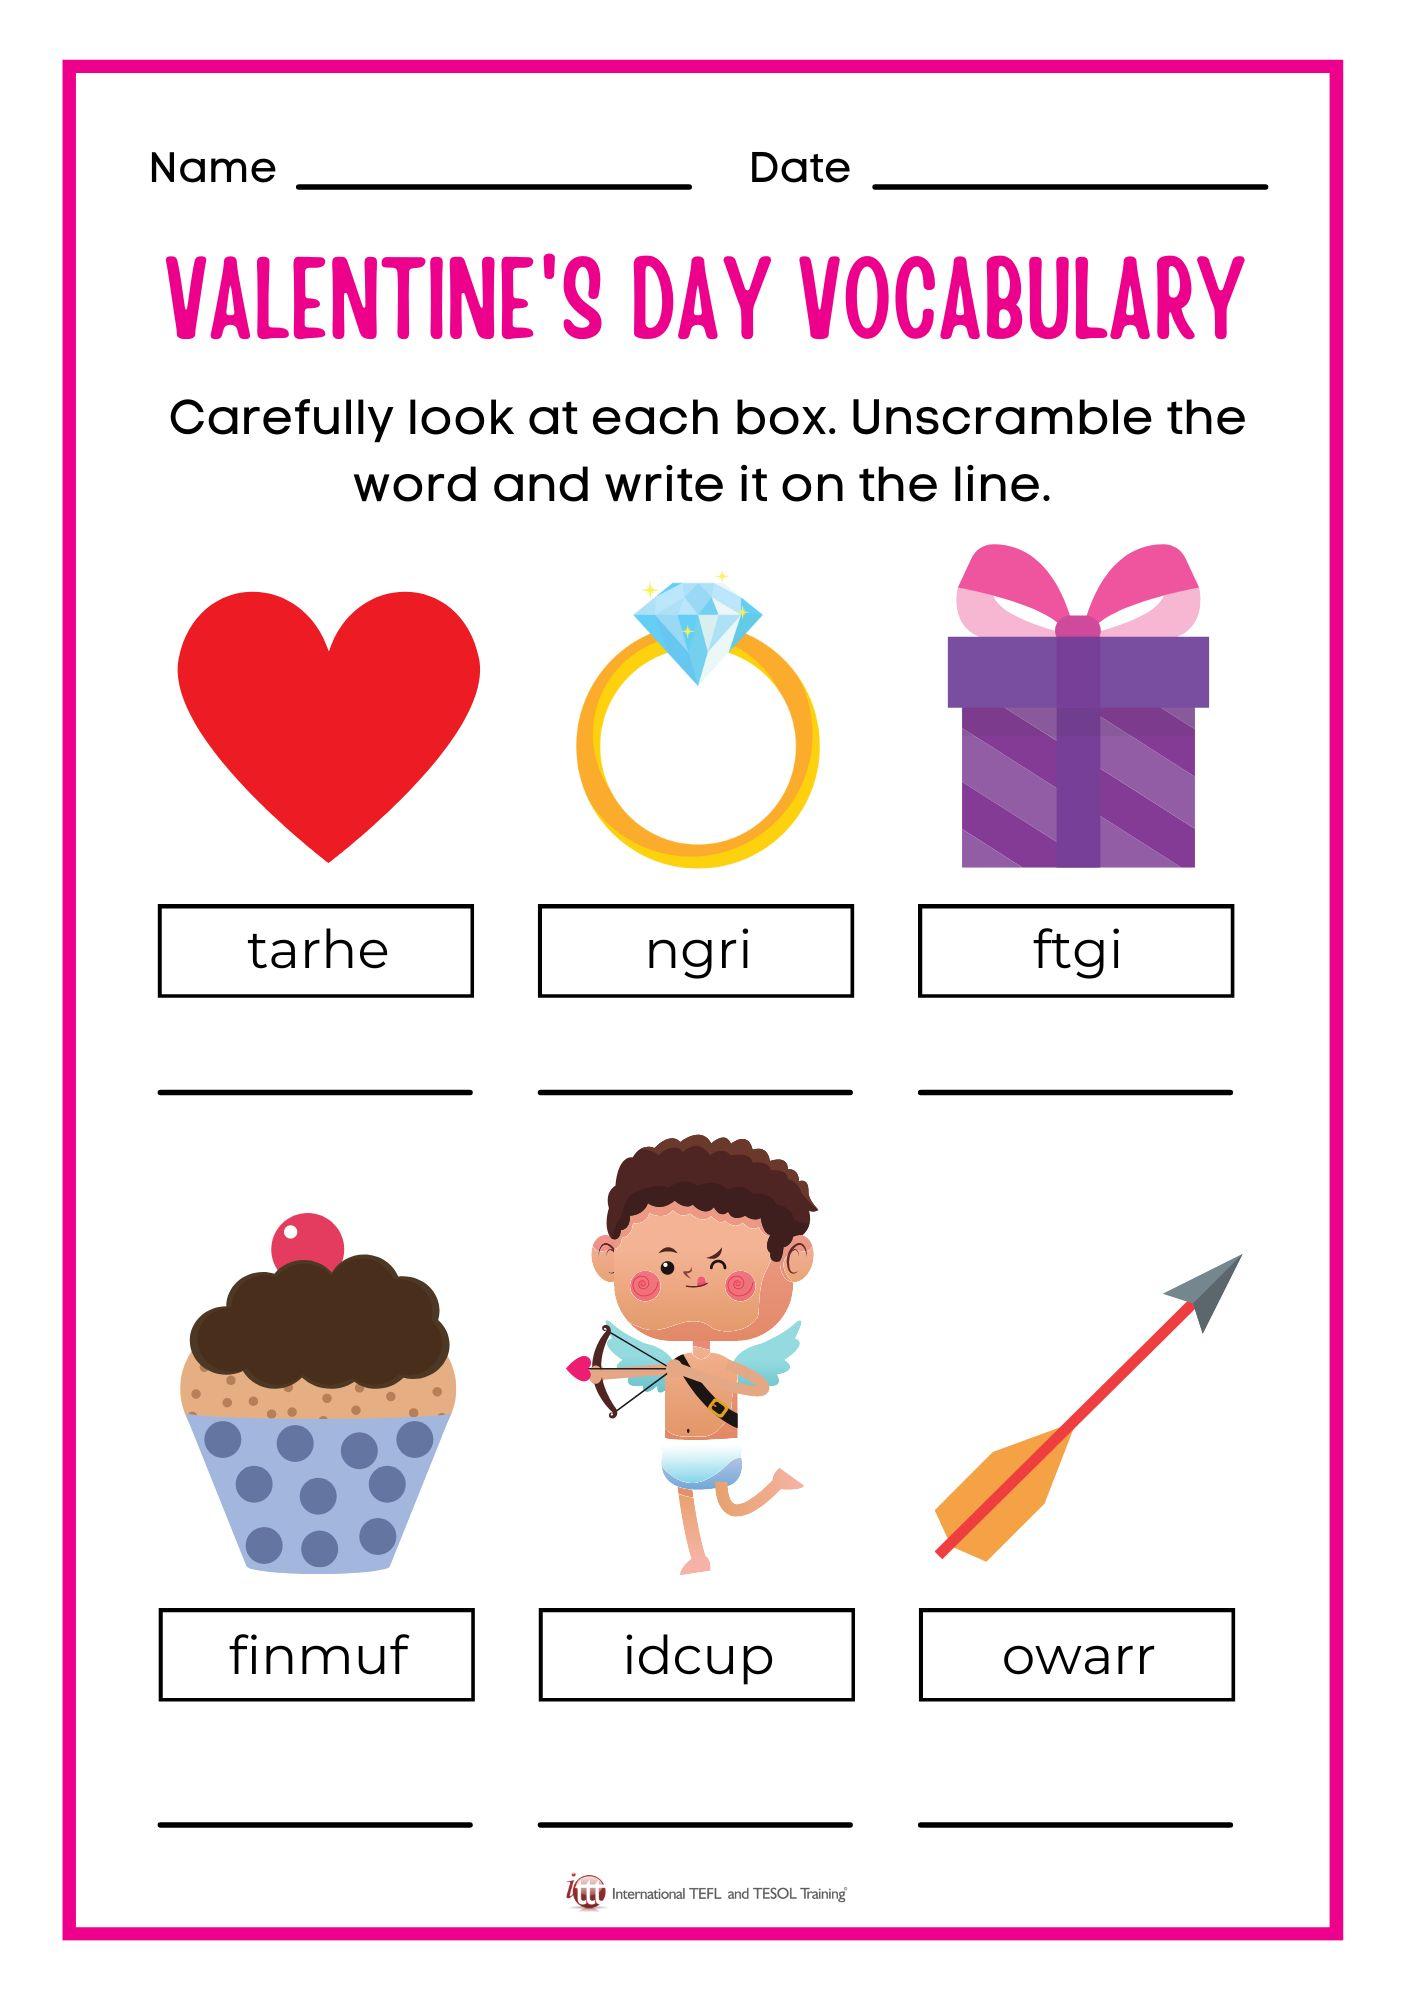 Grammar corner Valentine's Day Vocabulary EFL Worksheet II